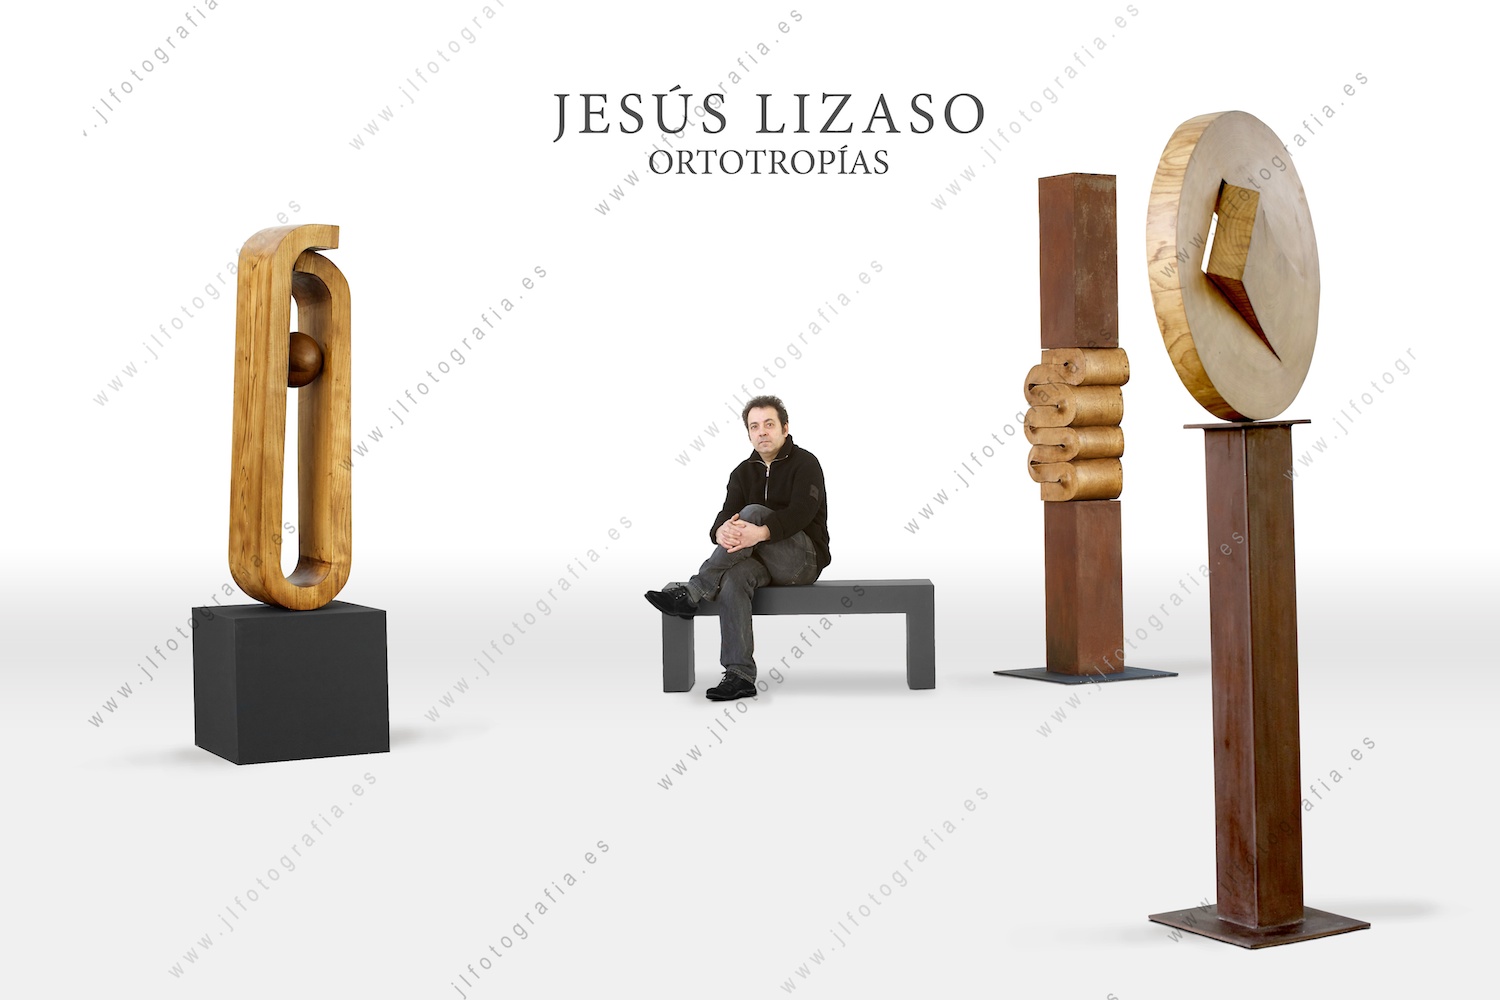 Jesus Lizaso presentando su última obra, Ortotropías